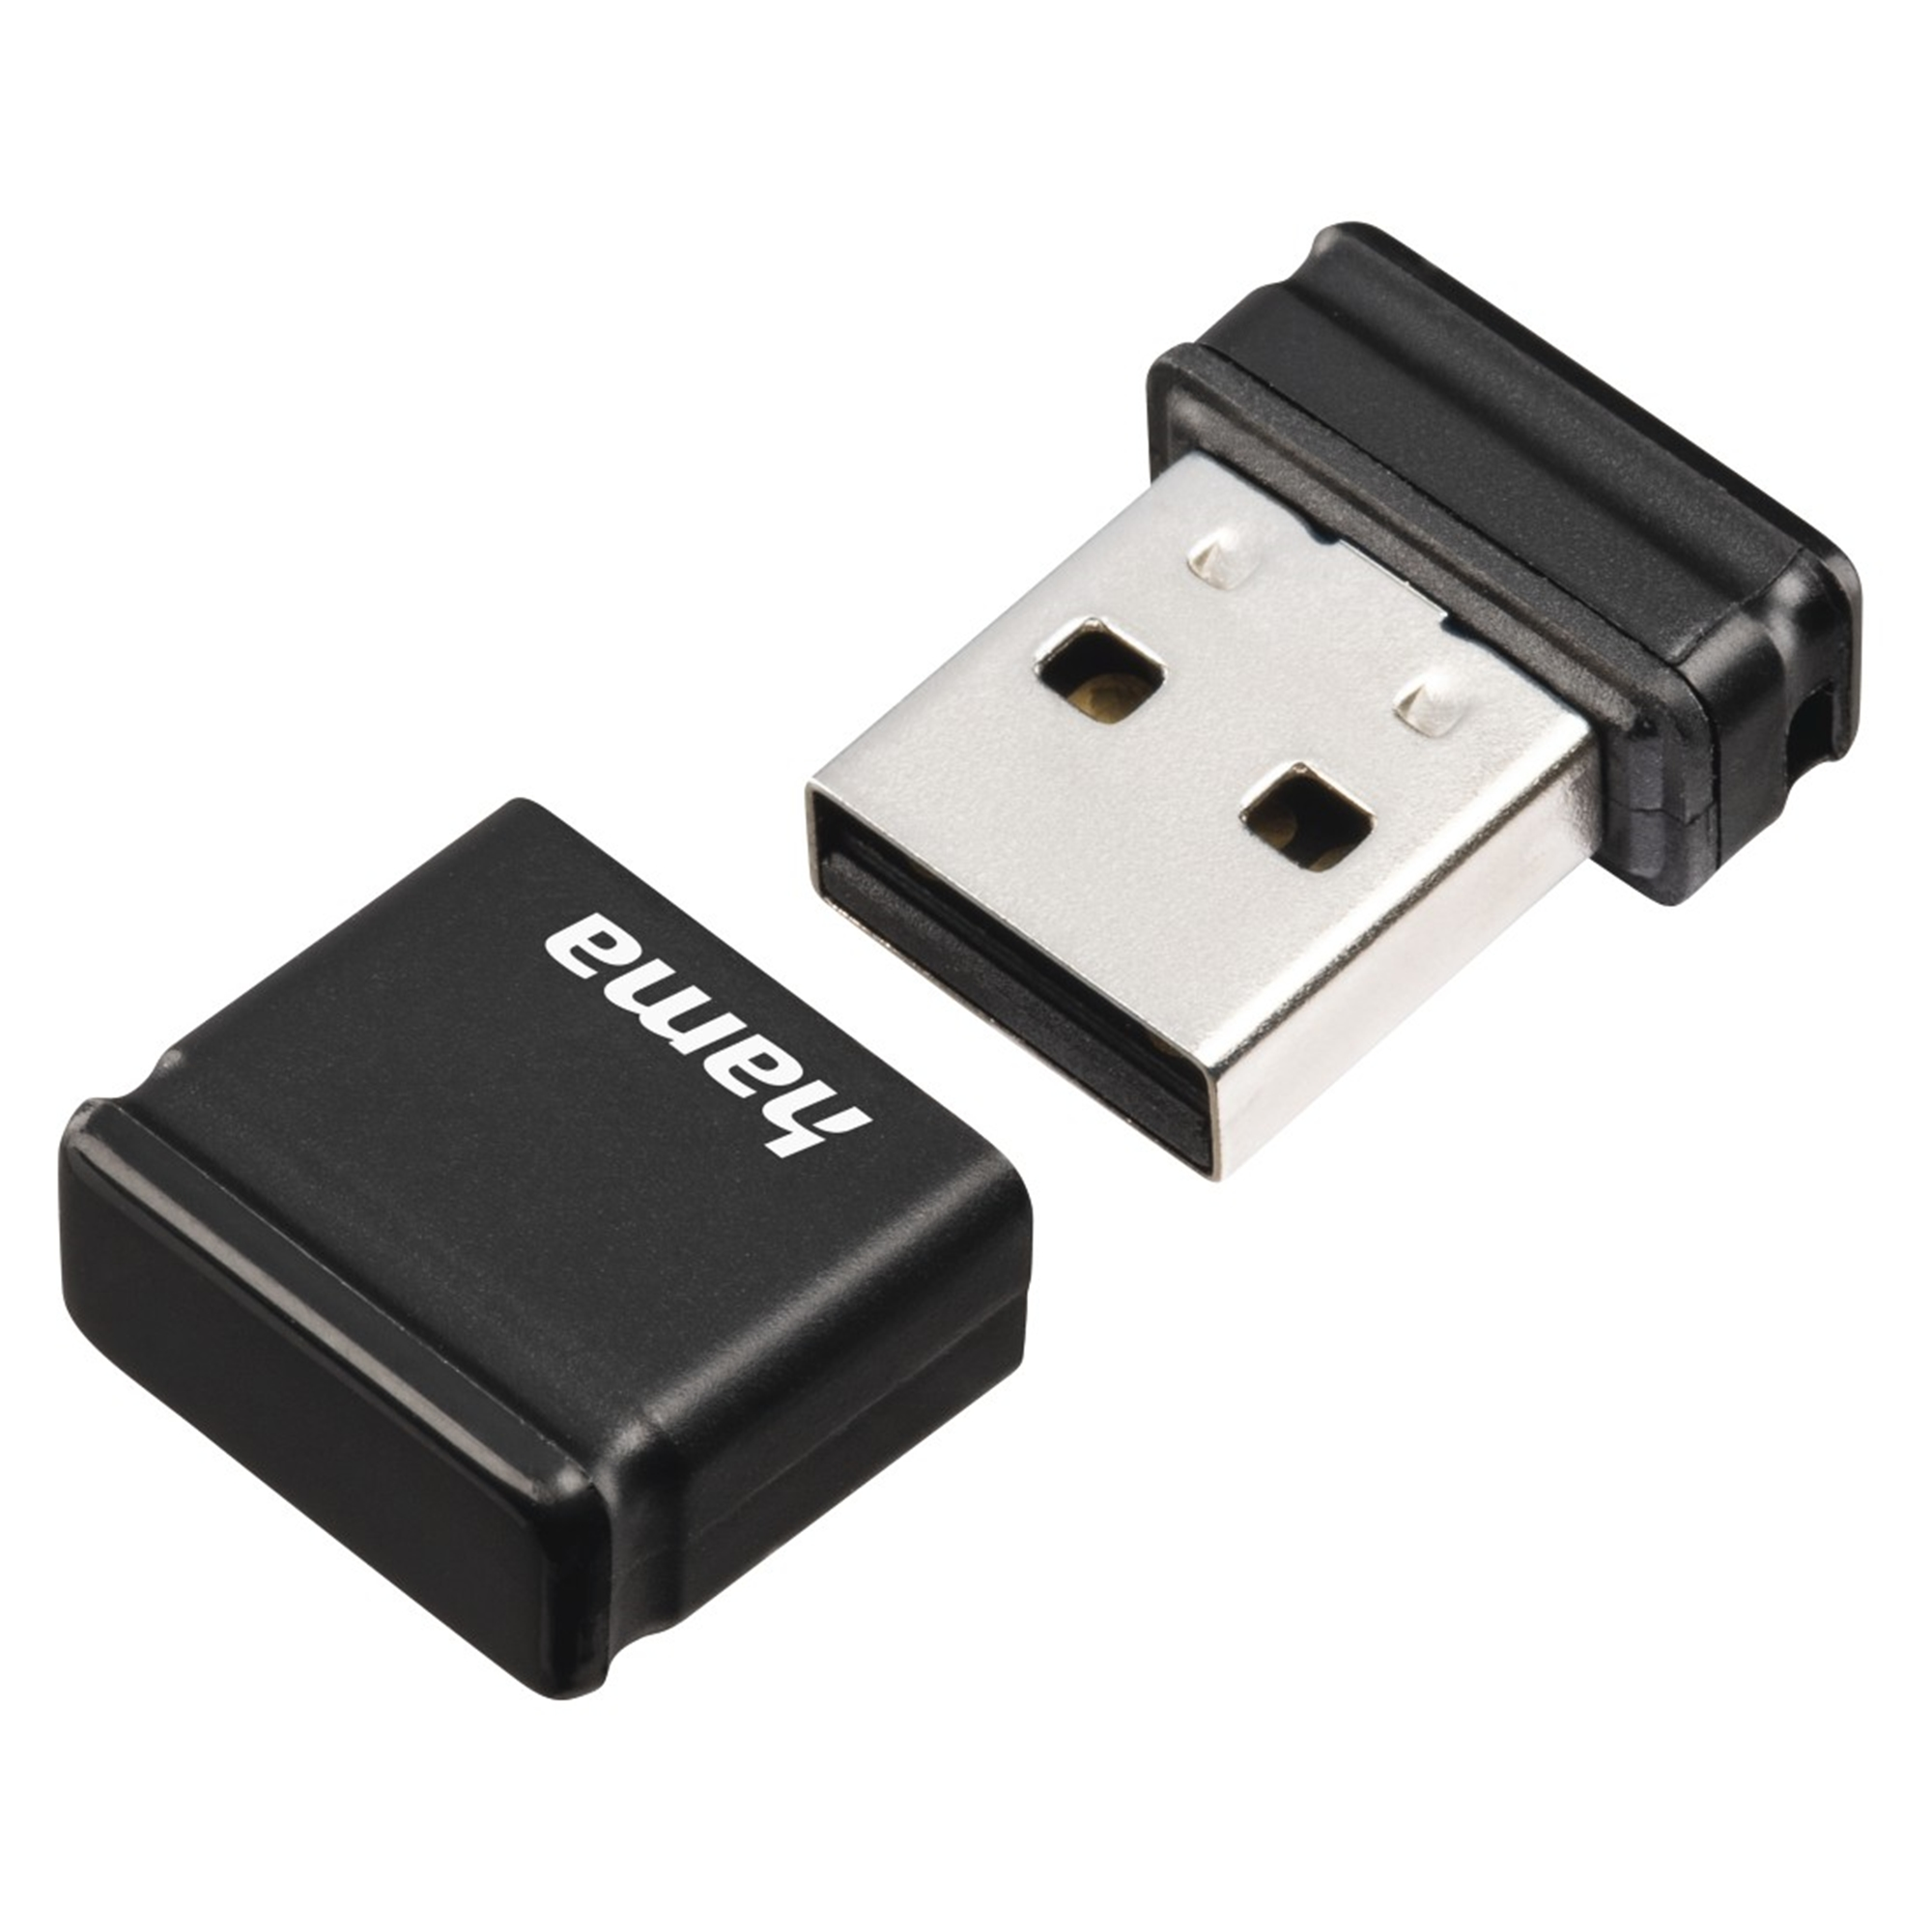 32 GB) (Schwarz, HAMA GB 32 Smartly USB-Stick